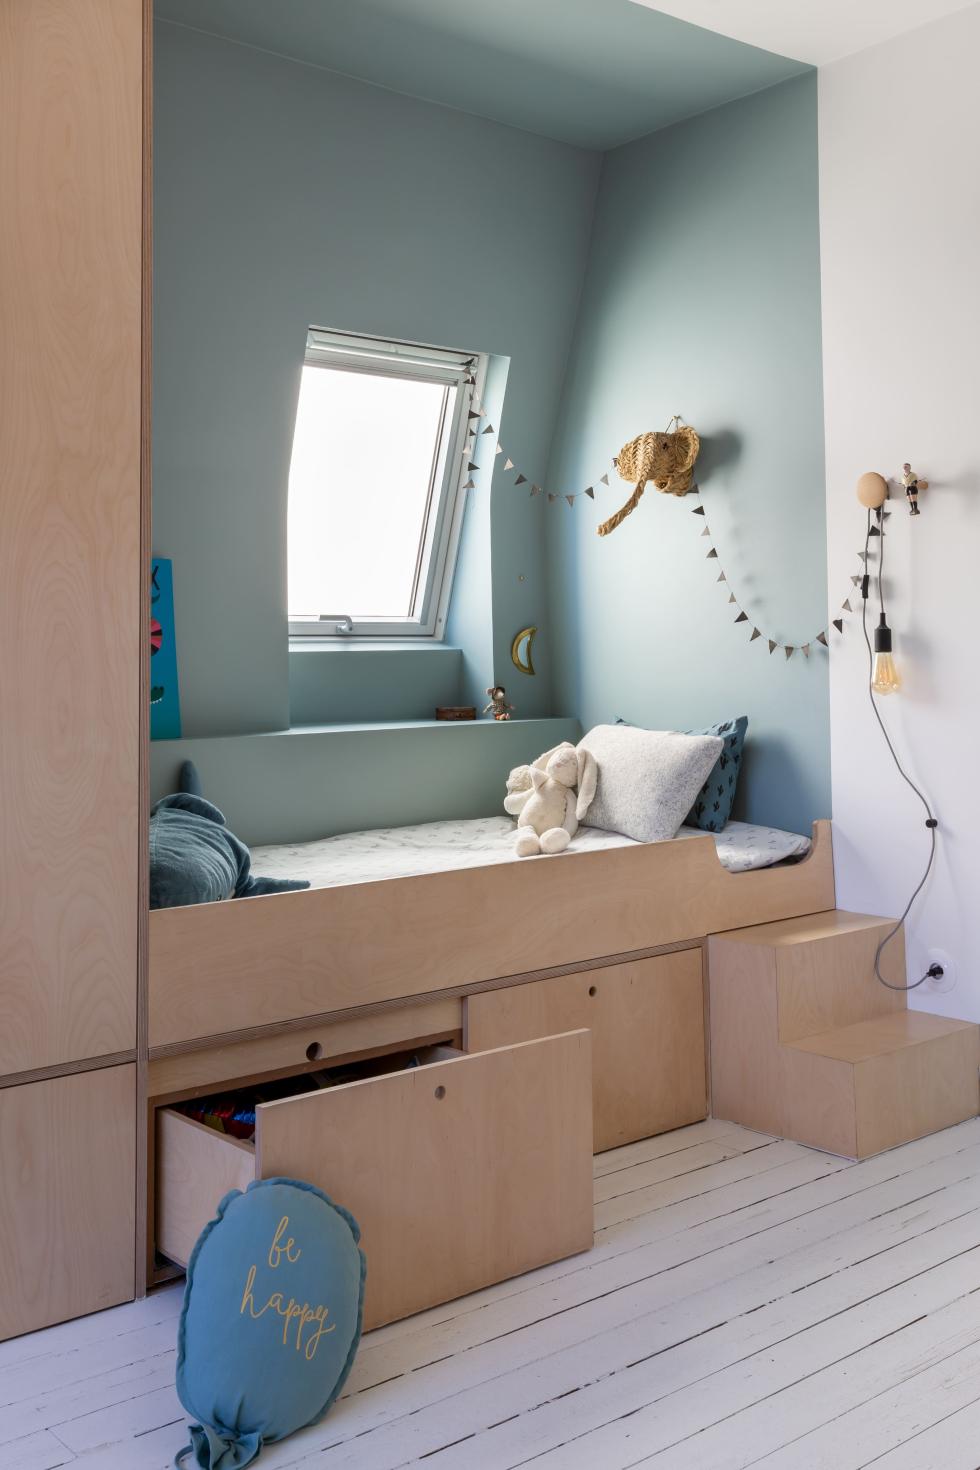 Podiumbett aus Holz in Blau, Raum im Raum Effekt mit Farbe